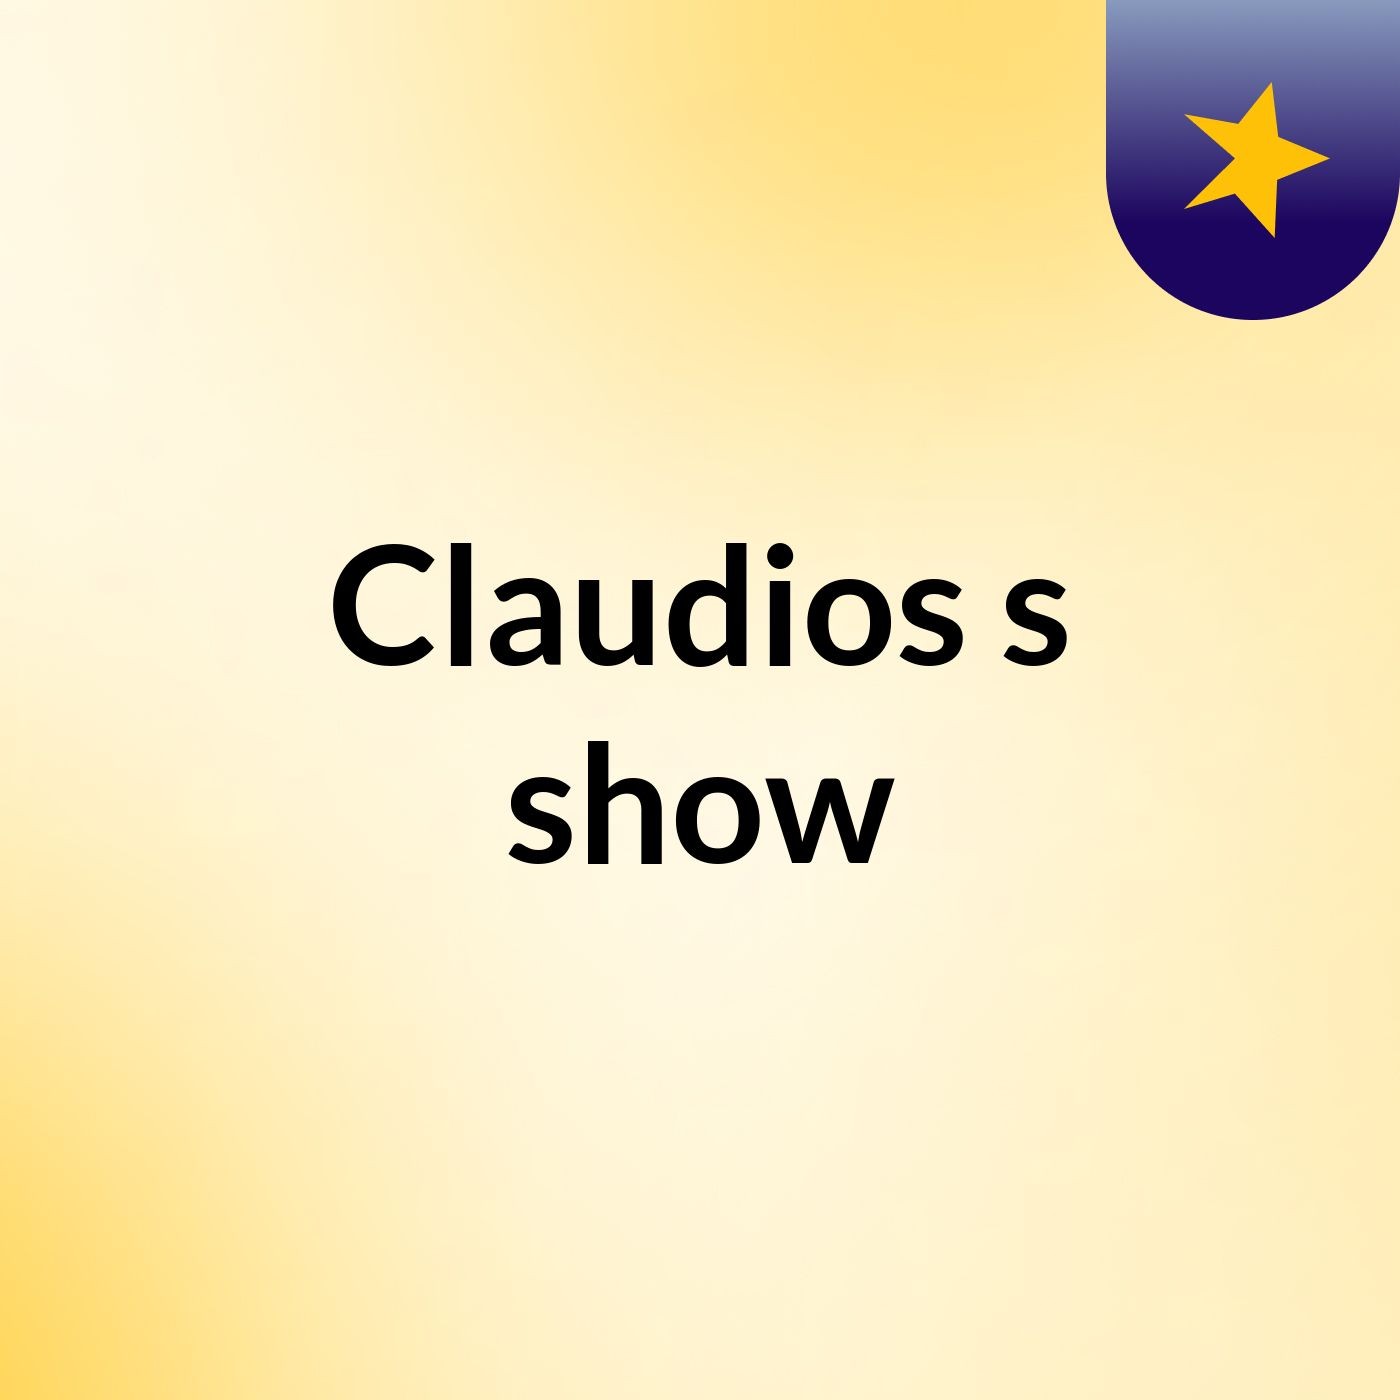 Claudios's show